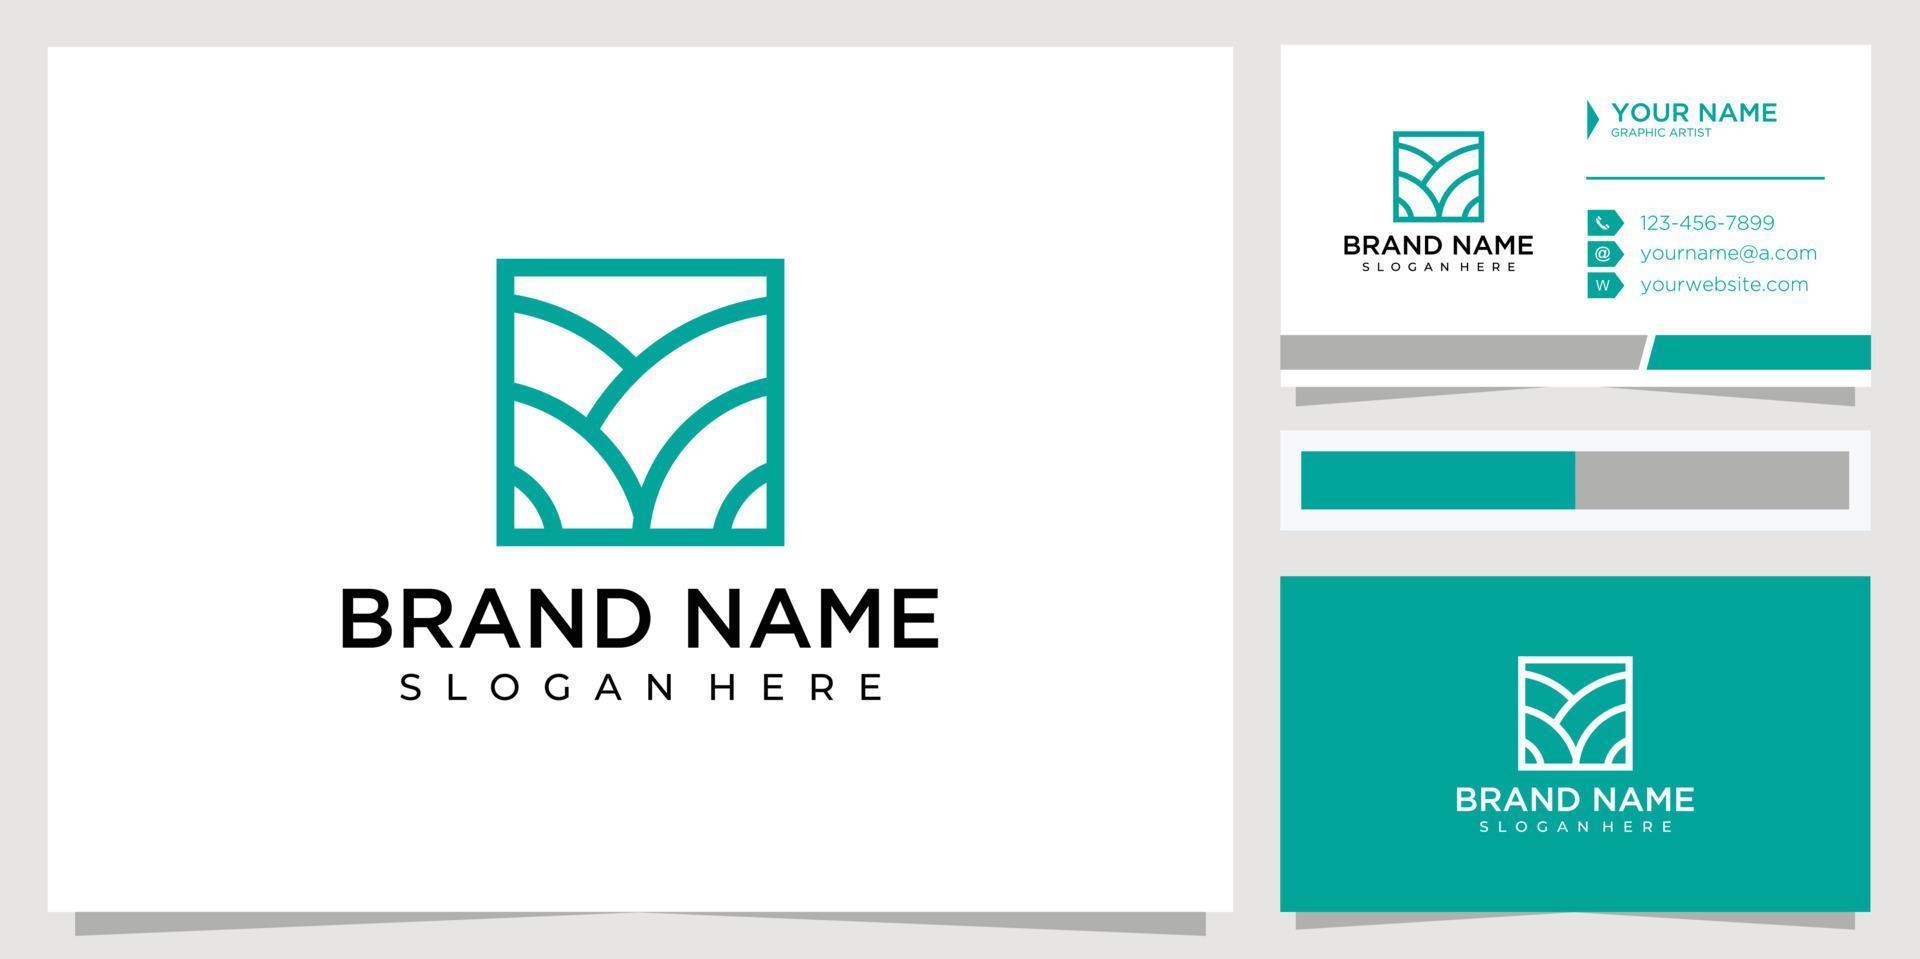 logo simple minimalist landscape view. land logo design concept vector